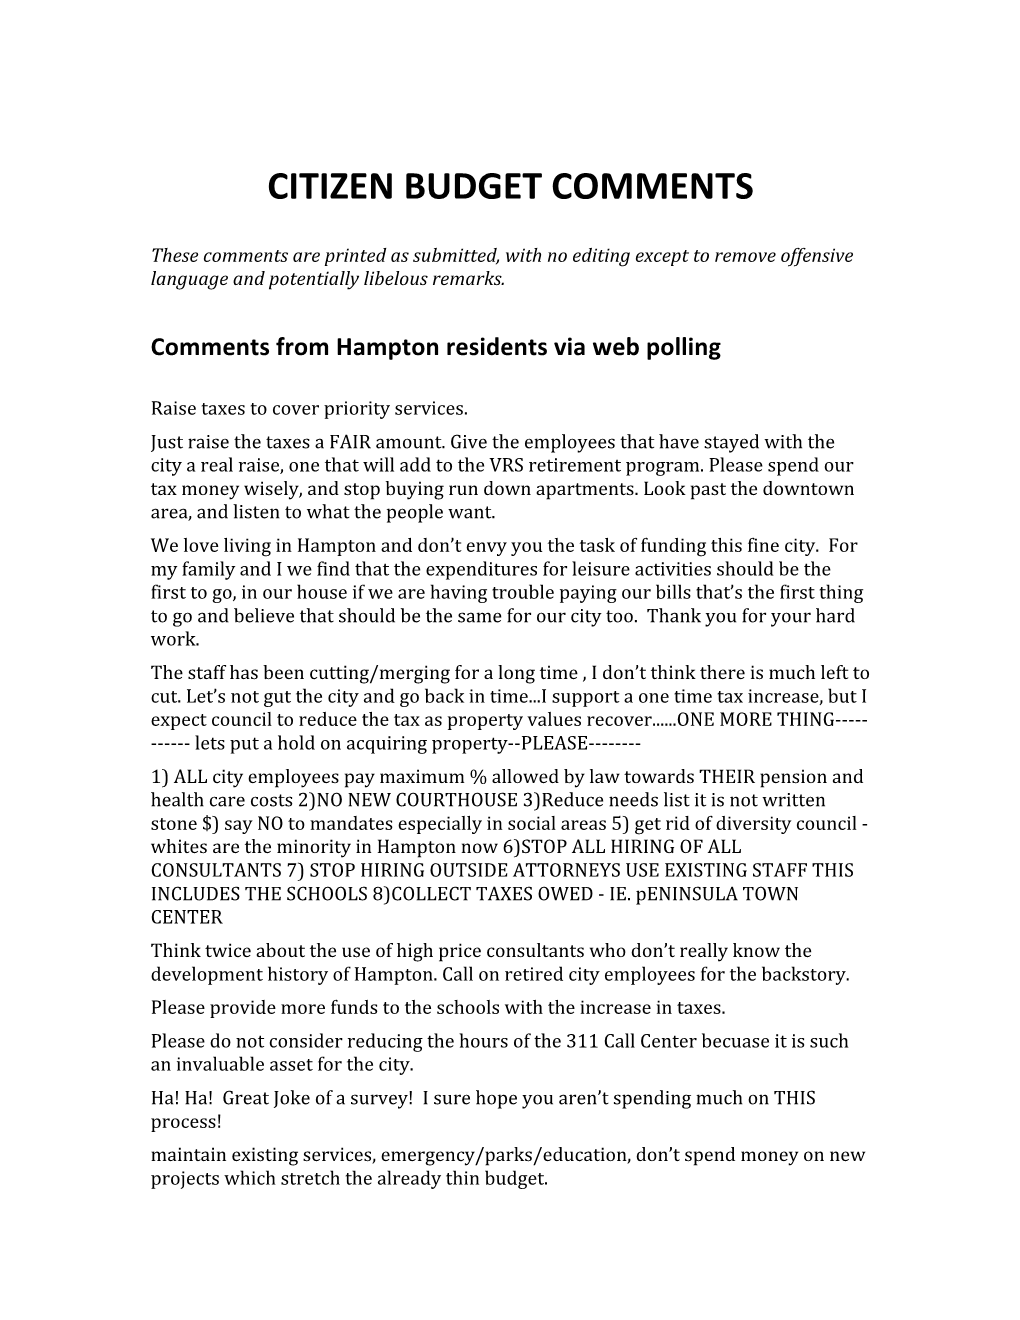 Citizen Budget Comments